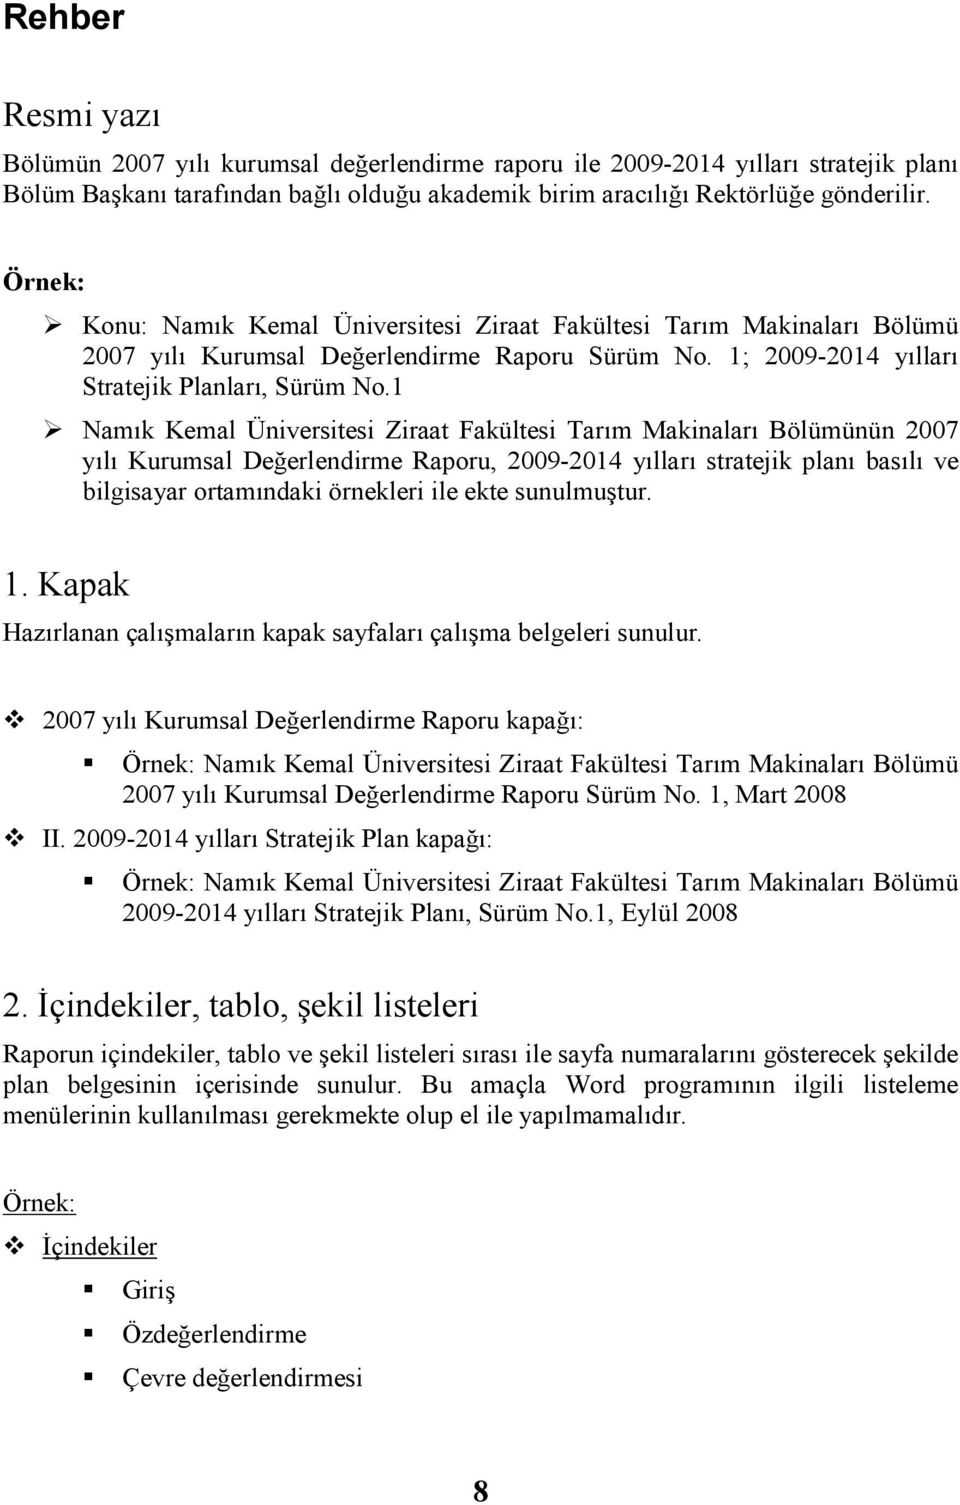 1 Namık Kemal Üniversitesi Ziraat Fakültesi Tarım Makinaları Bölümünün Kurumsal Değerlendirme Raporu, 2009-2014 yılları stratejik planı basılı ve bilgisayar ortamındaki örnekleri ile ekte sunulmuştur.